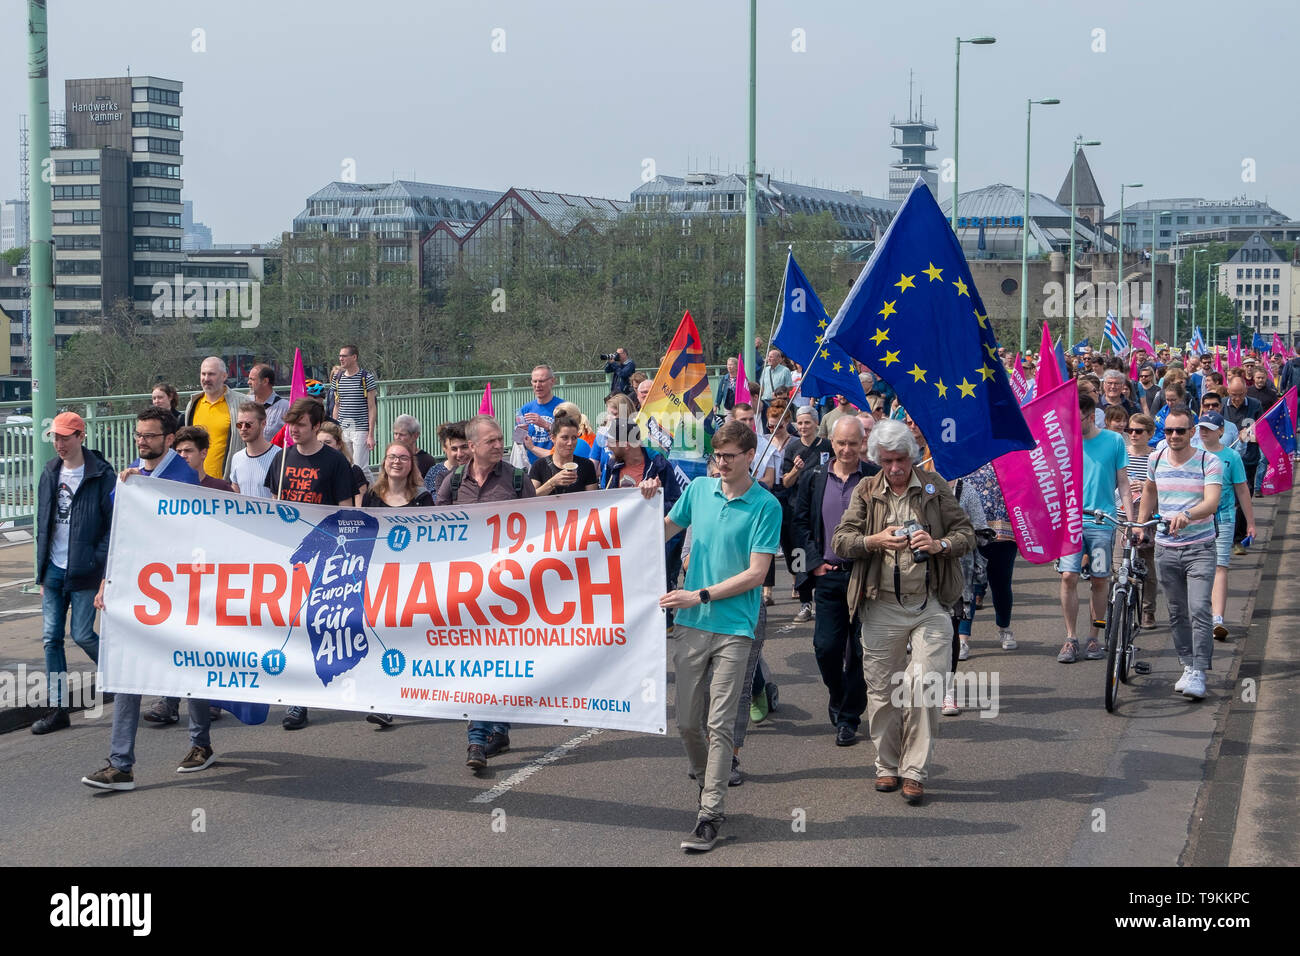 30 tausend Menschen auf die Straße und am Sonntag in Köln zu einer Demonstration für die europäische Einigung und gegen Nationalismus Stockfoto